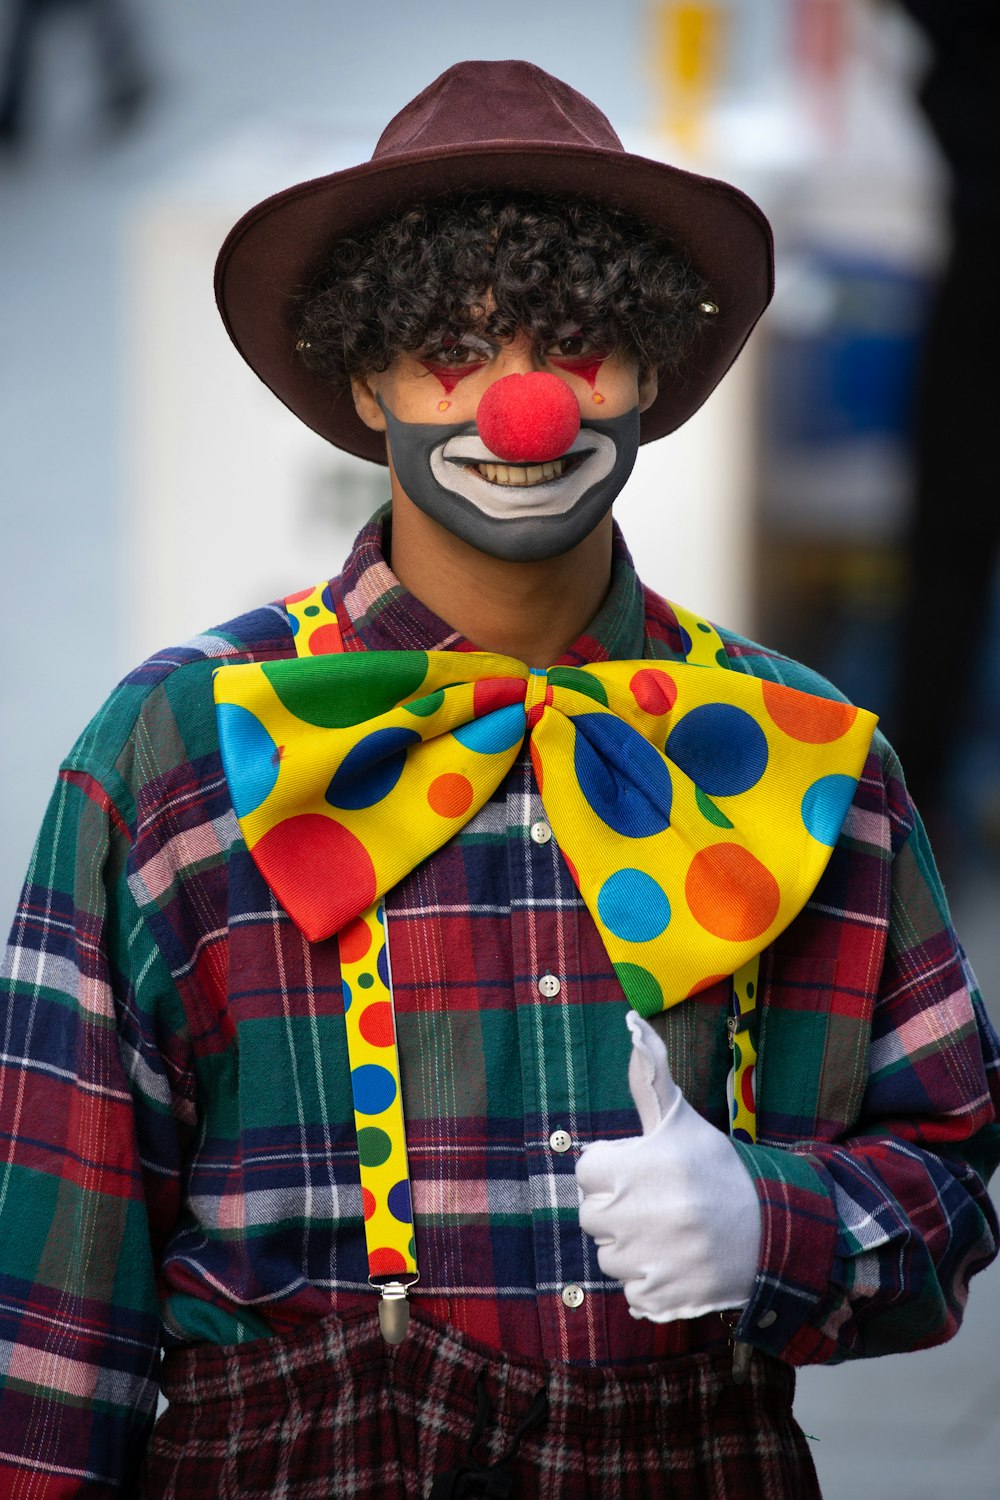 Gibby the clown full